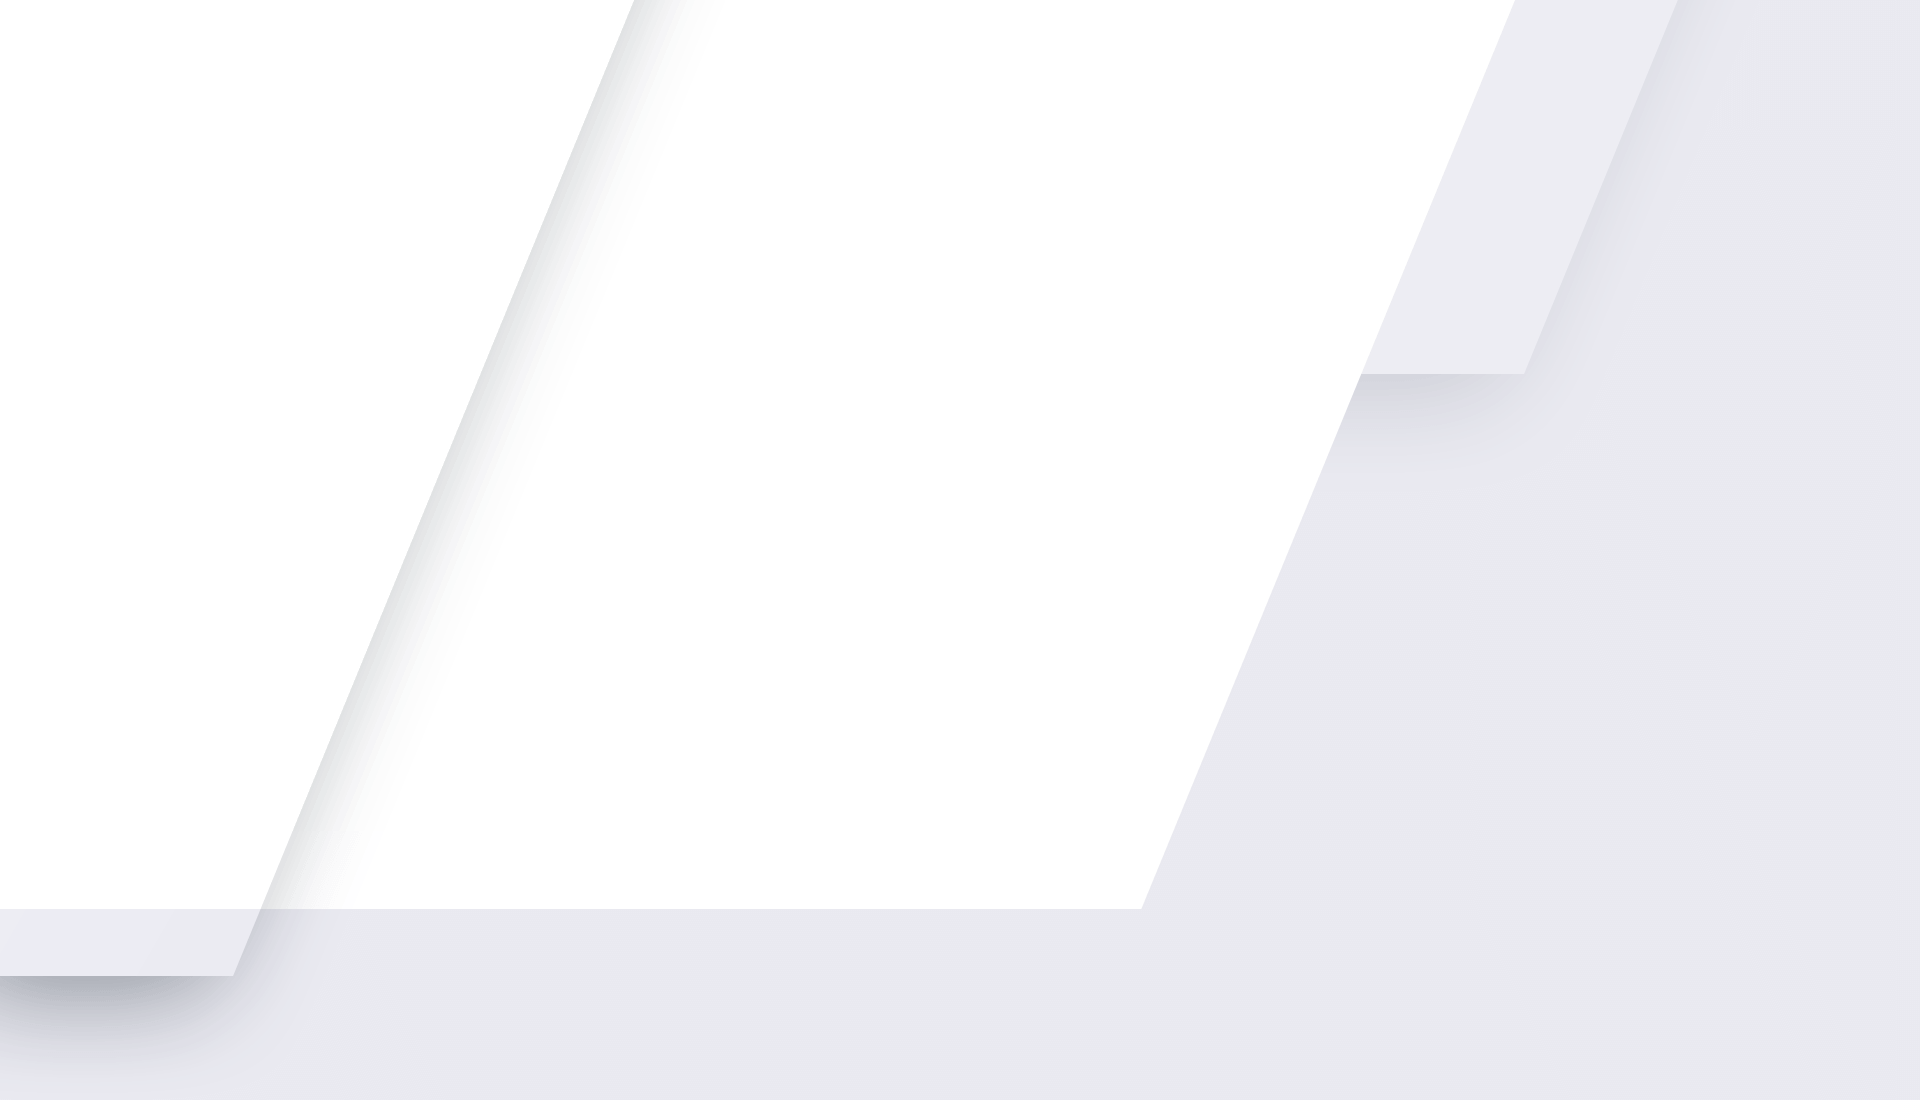 Hintergrund transparent mit weißem Rahmen rechts